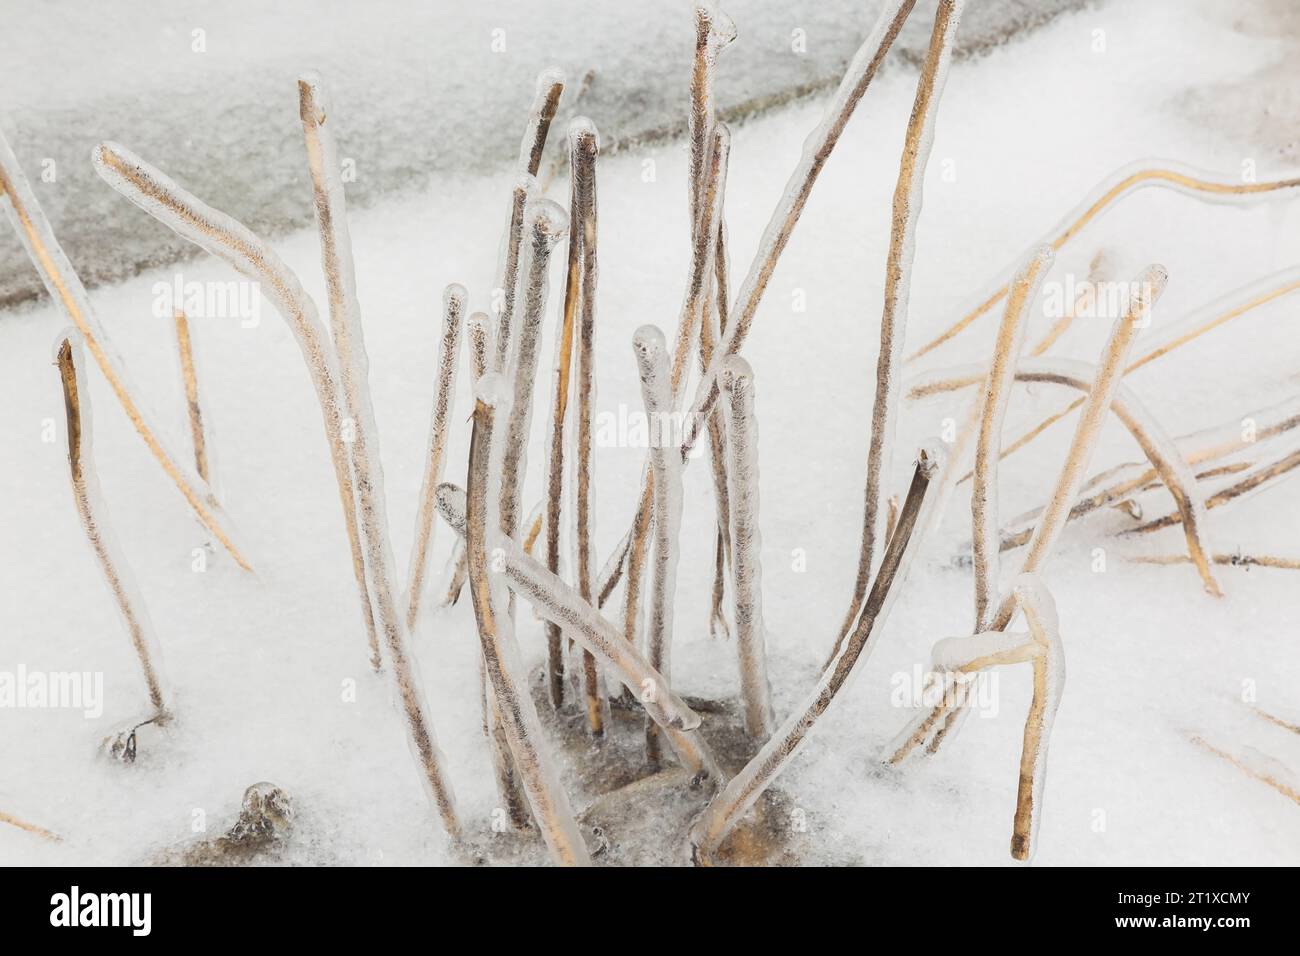 Geschnittene und verwelkte Hosta-Pflanzenstiele, die nach dem Eisregen im Frühjahr mit Eis bedeckt sind. Stockfoto